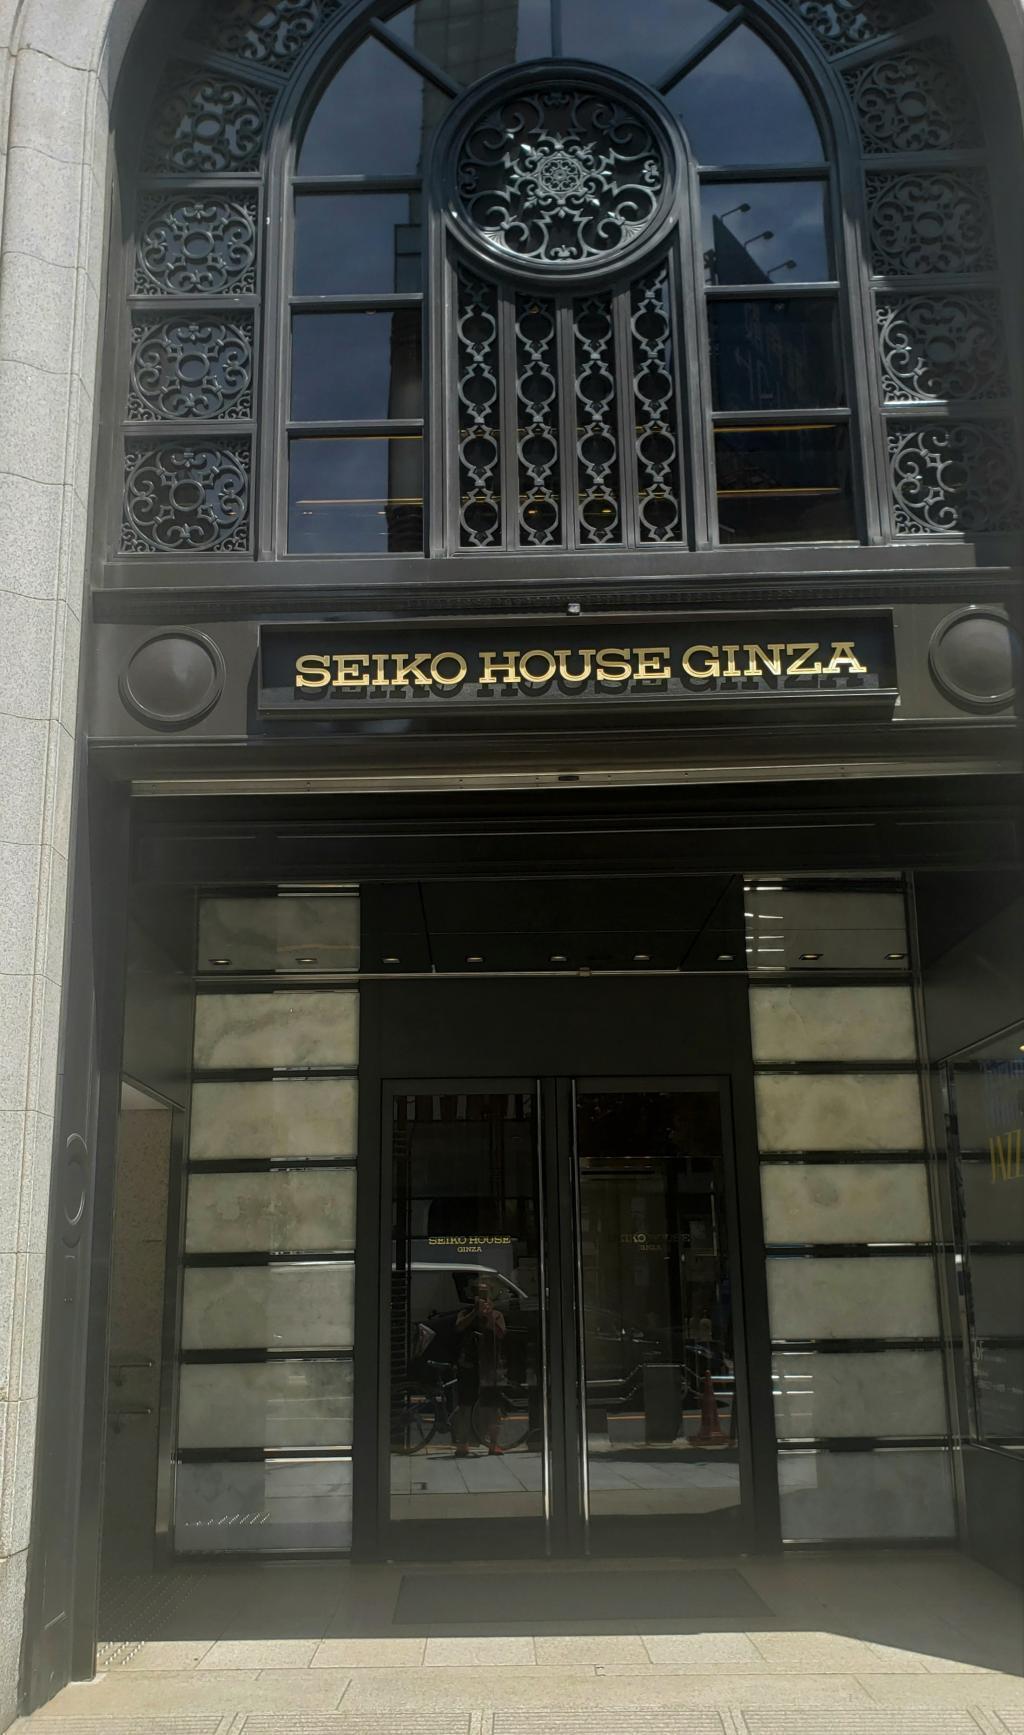  「和光」本館は
「SEIKO HOUSE GINZA」に改称しました。